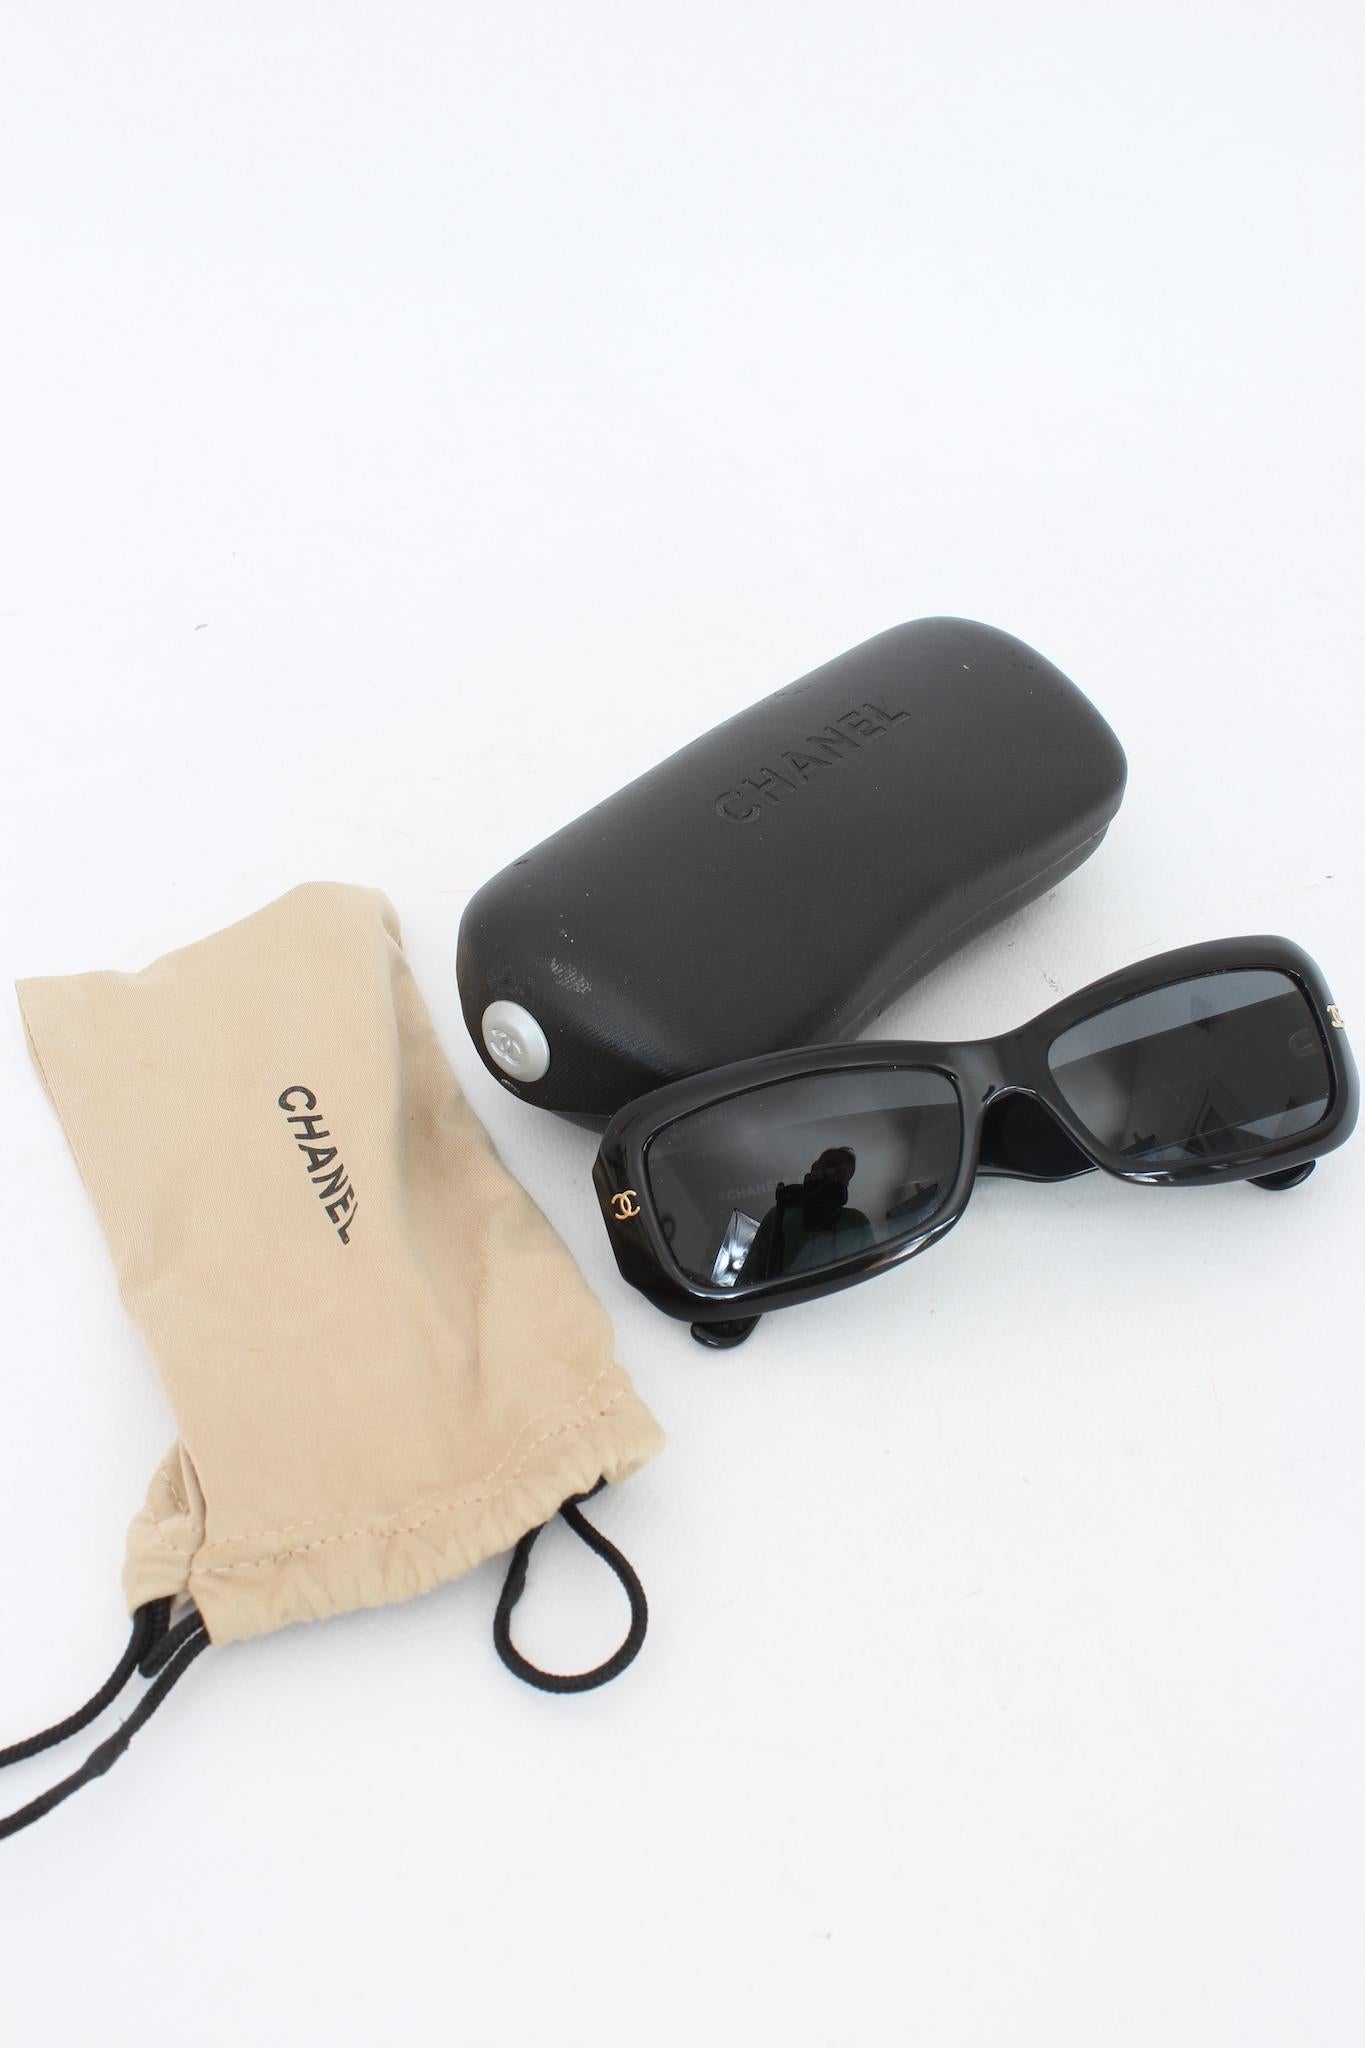 Chanel occhiali da sole vintage anni 2000. Colore nero con dettagli dorati sulle aste effetto trapuntato. Lente nera rettangolare. Presenti la dustbag e la custodia originale.

Codice: 5099 - 56.15.135

Lunghezza asta: 130 mm
Lunghezza lente: 50 mm